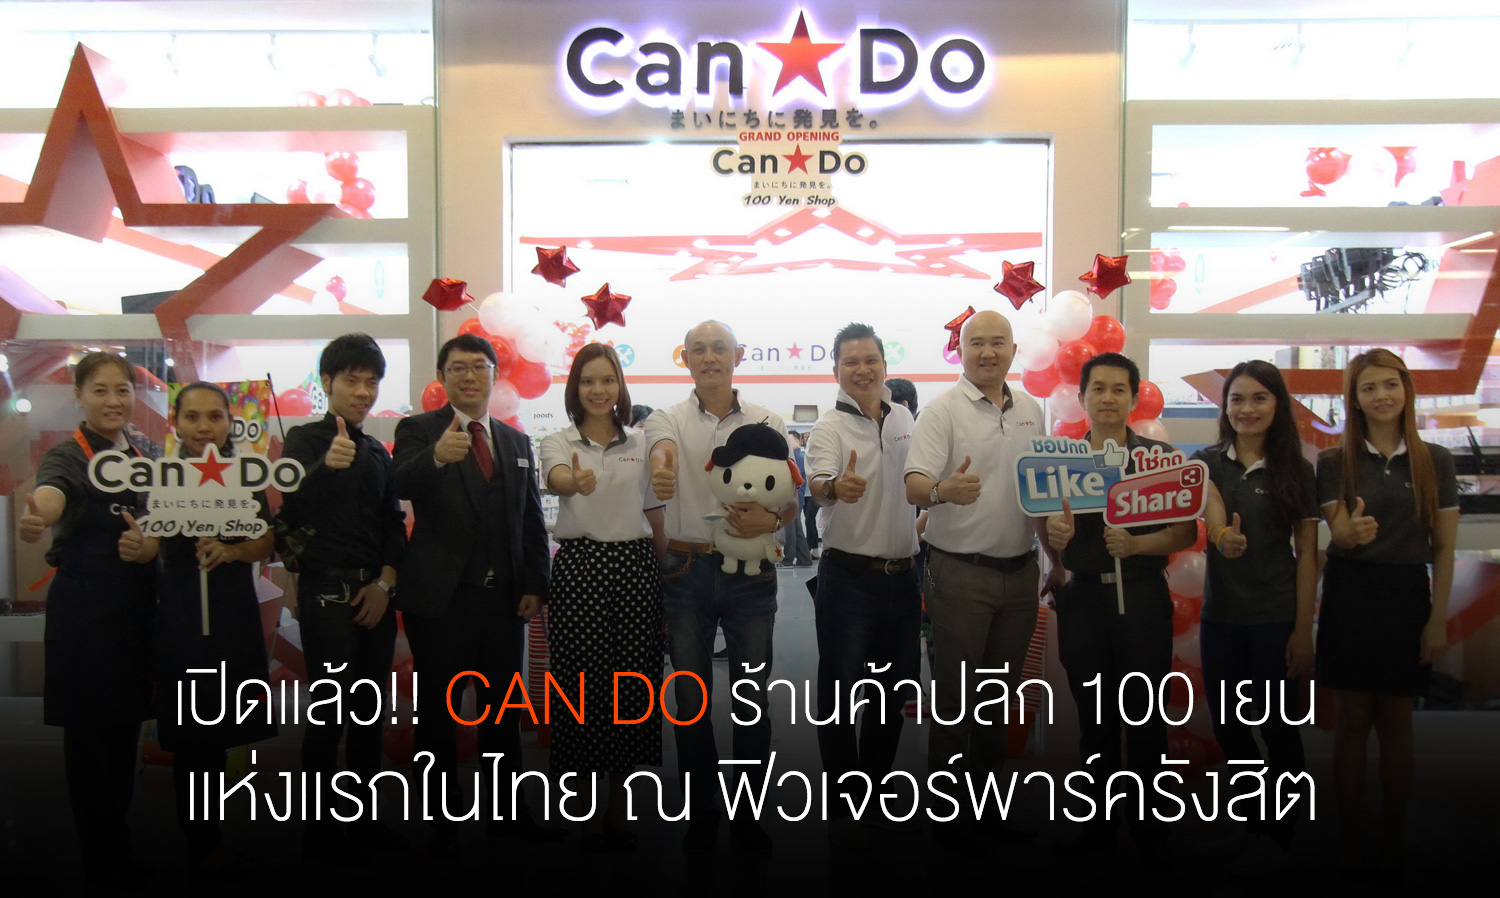 เปิดแล้ว!! Can Do ร้านค้าปลีก 100 เยน แห่งแรกในไทย ณ ฟิวเจอร์พาร์ครังสิต